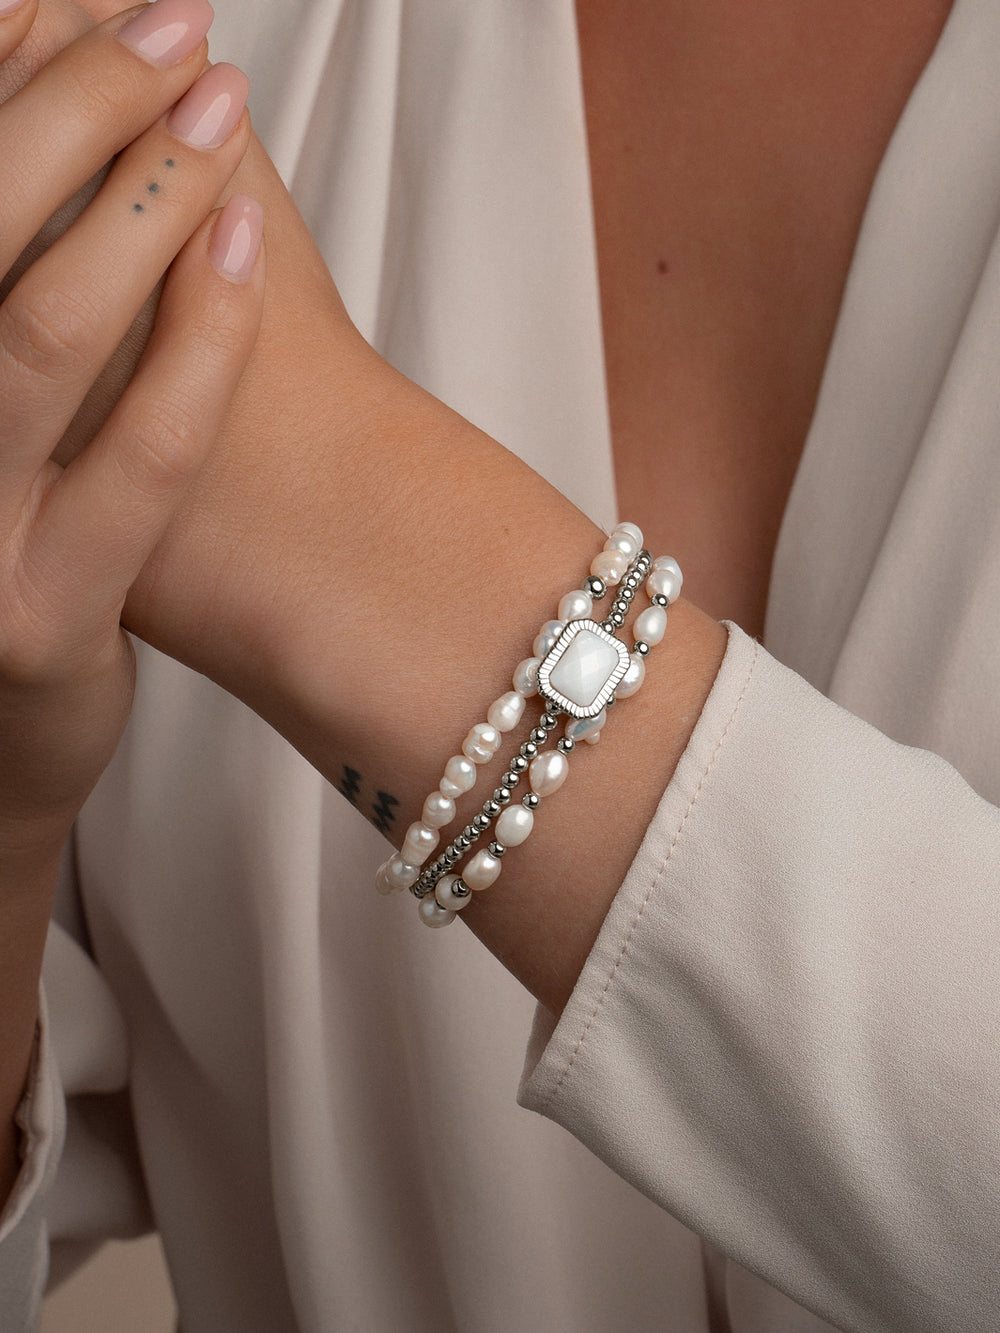 Armbanden set voor vrouwen van Sparkling jewels met parel edel stenen en zilveren kralen